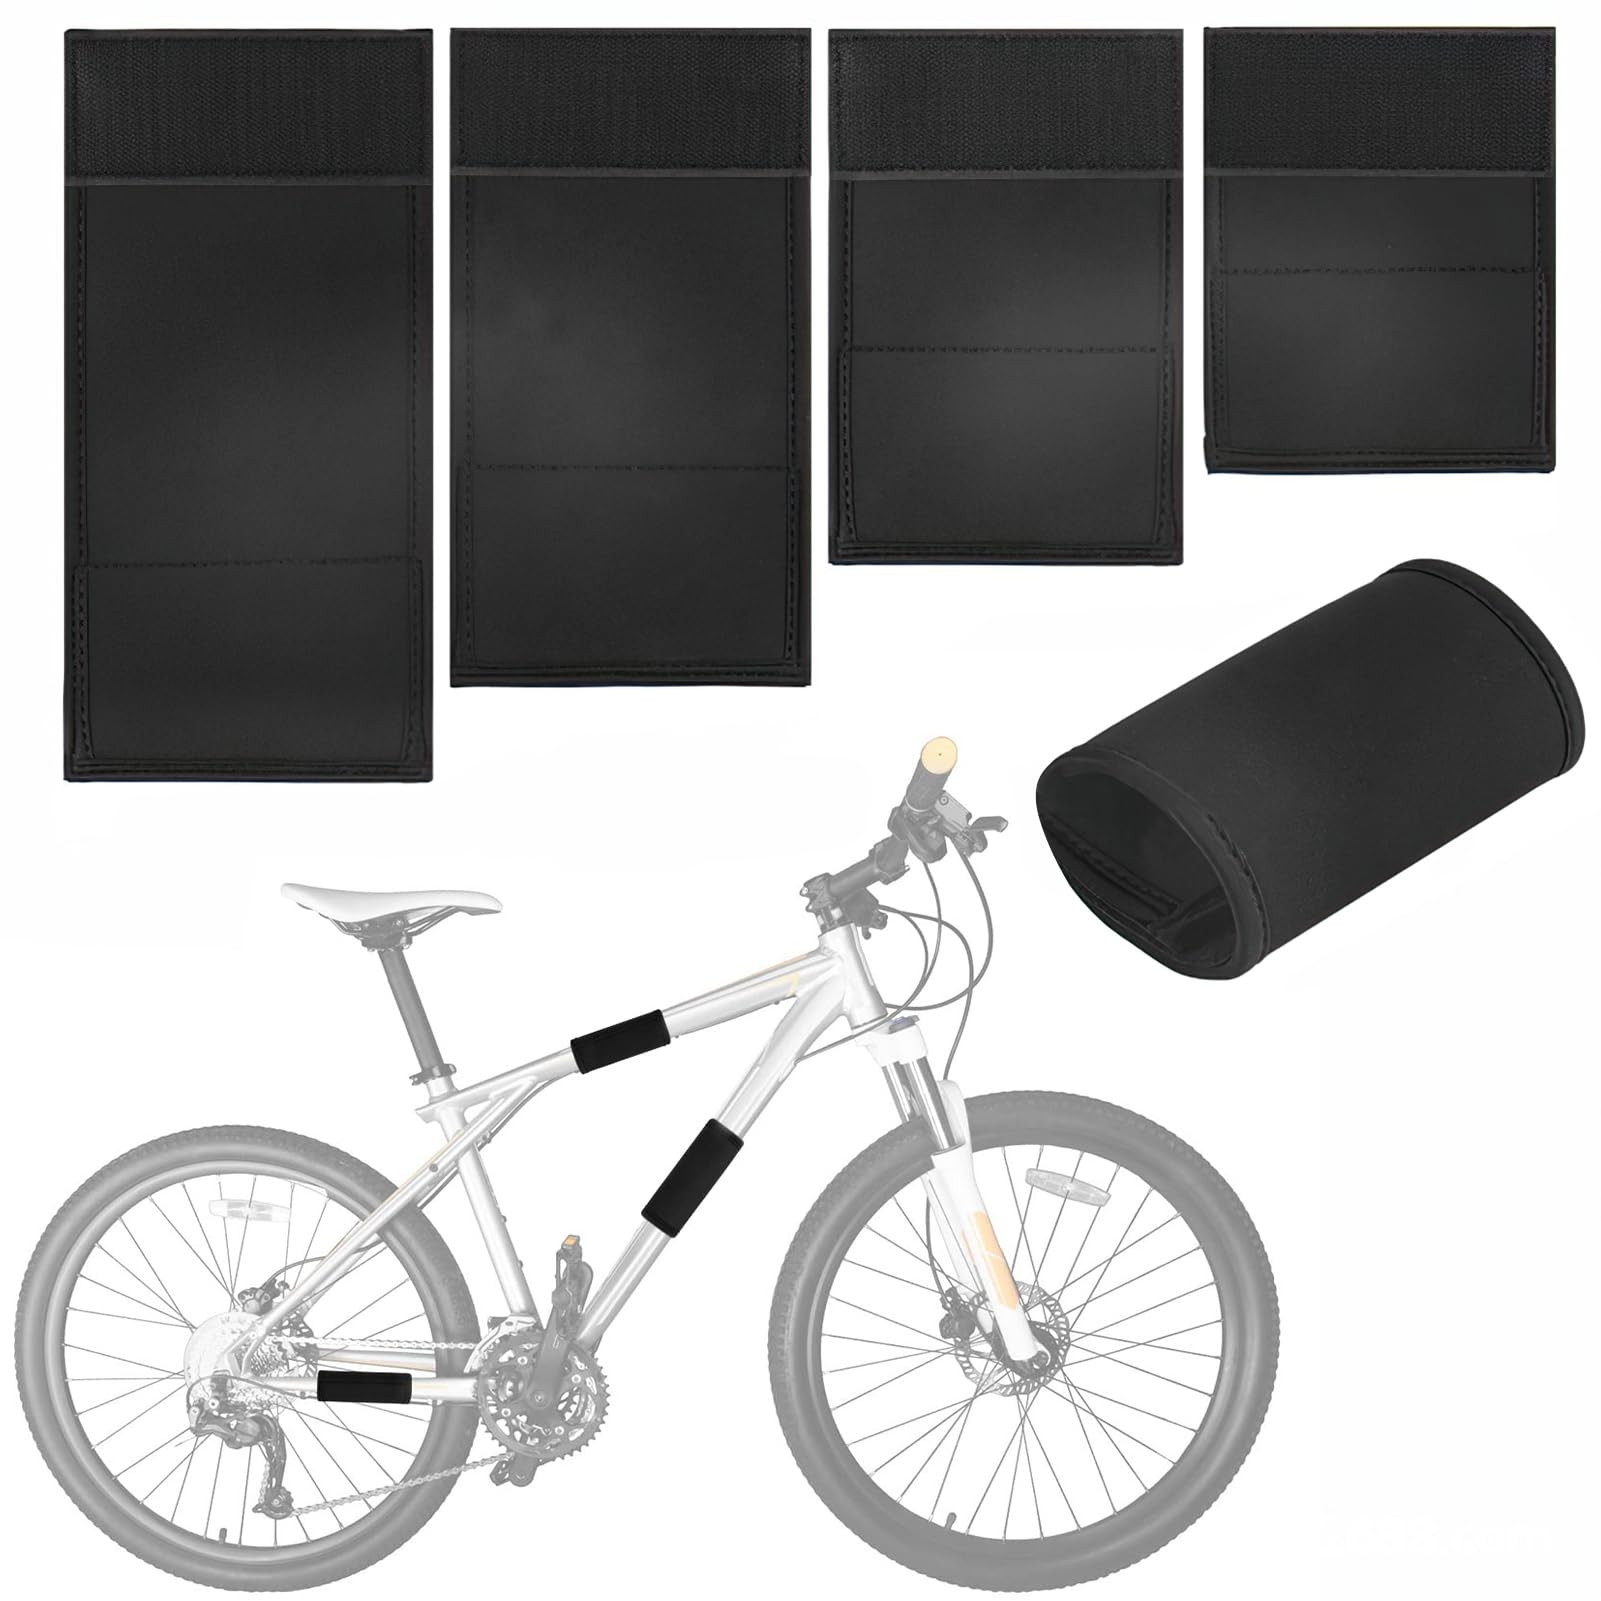 Fahrrad Rahmenschützer, Transportschutz für Fahrradrahmen Schutz für Kohlefaserrahmen in 4 verschiedenen Größen Fahrradzubehör Fahrrad-Kratzschutz für Mountainbikes E-Bikes von Cimvidi